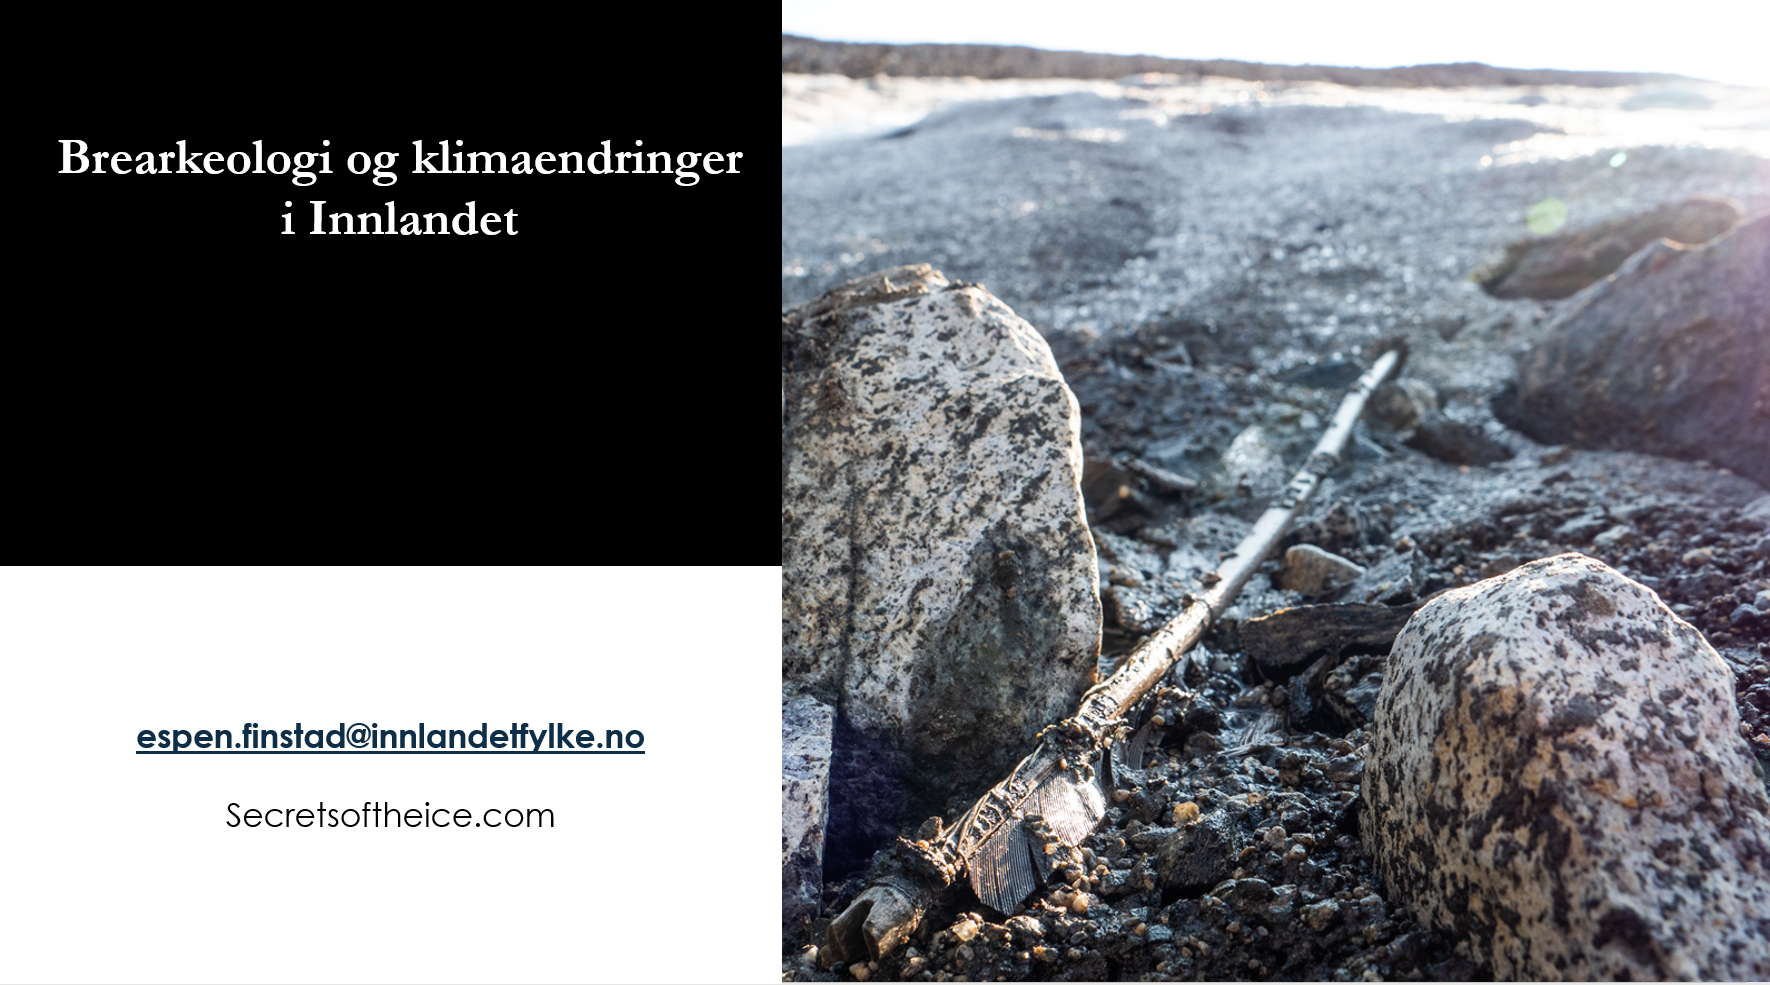 Førstesiden på en presentasjon med et bilde av en grå stein og teksten "Brearkeologi og klimaendringer i Innlandet. espen.finstad@innlandetfylke.no"